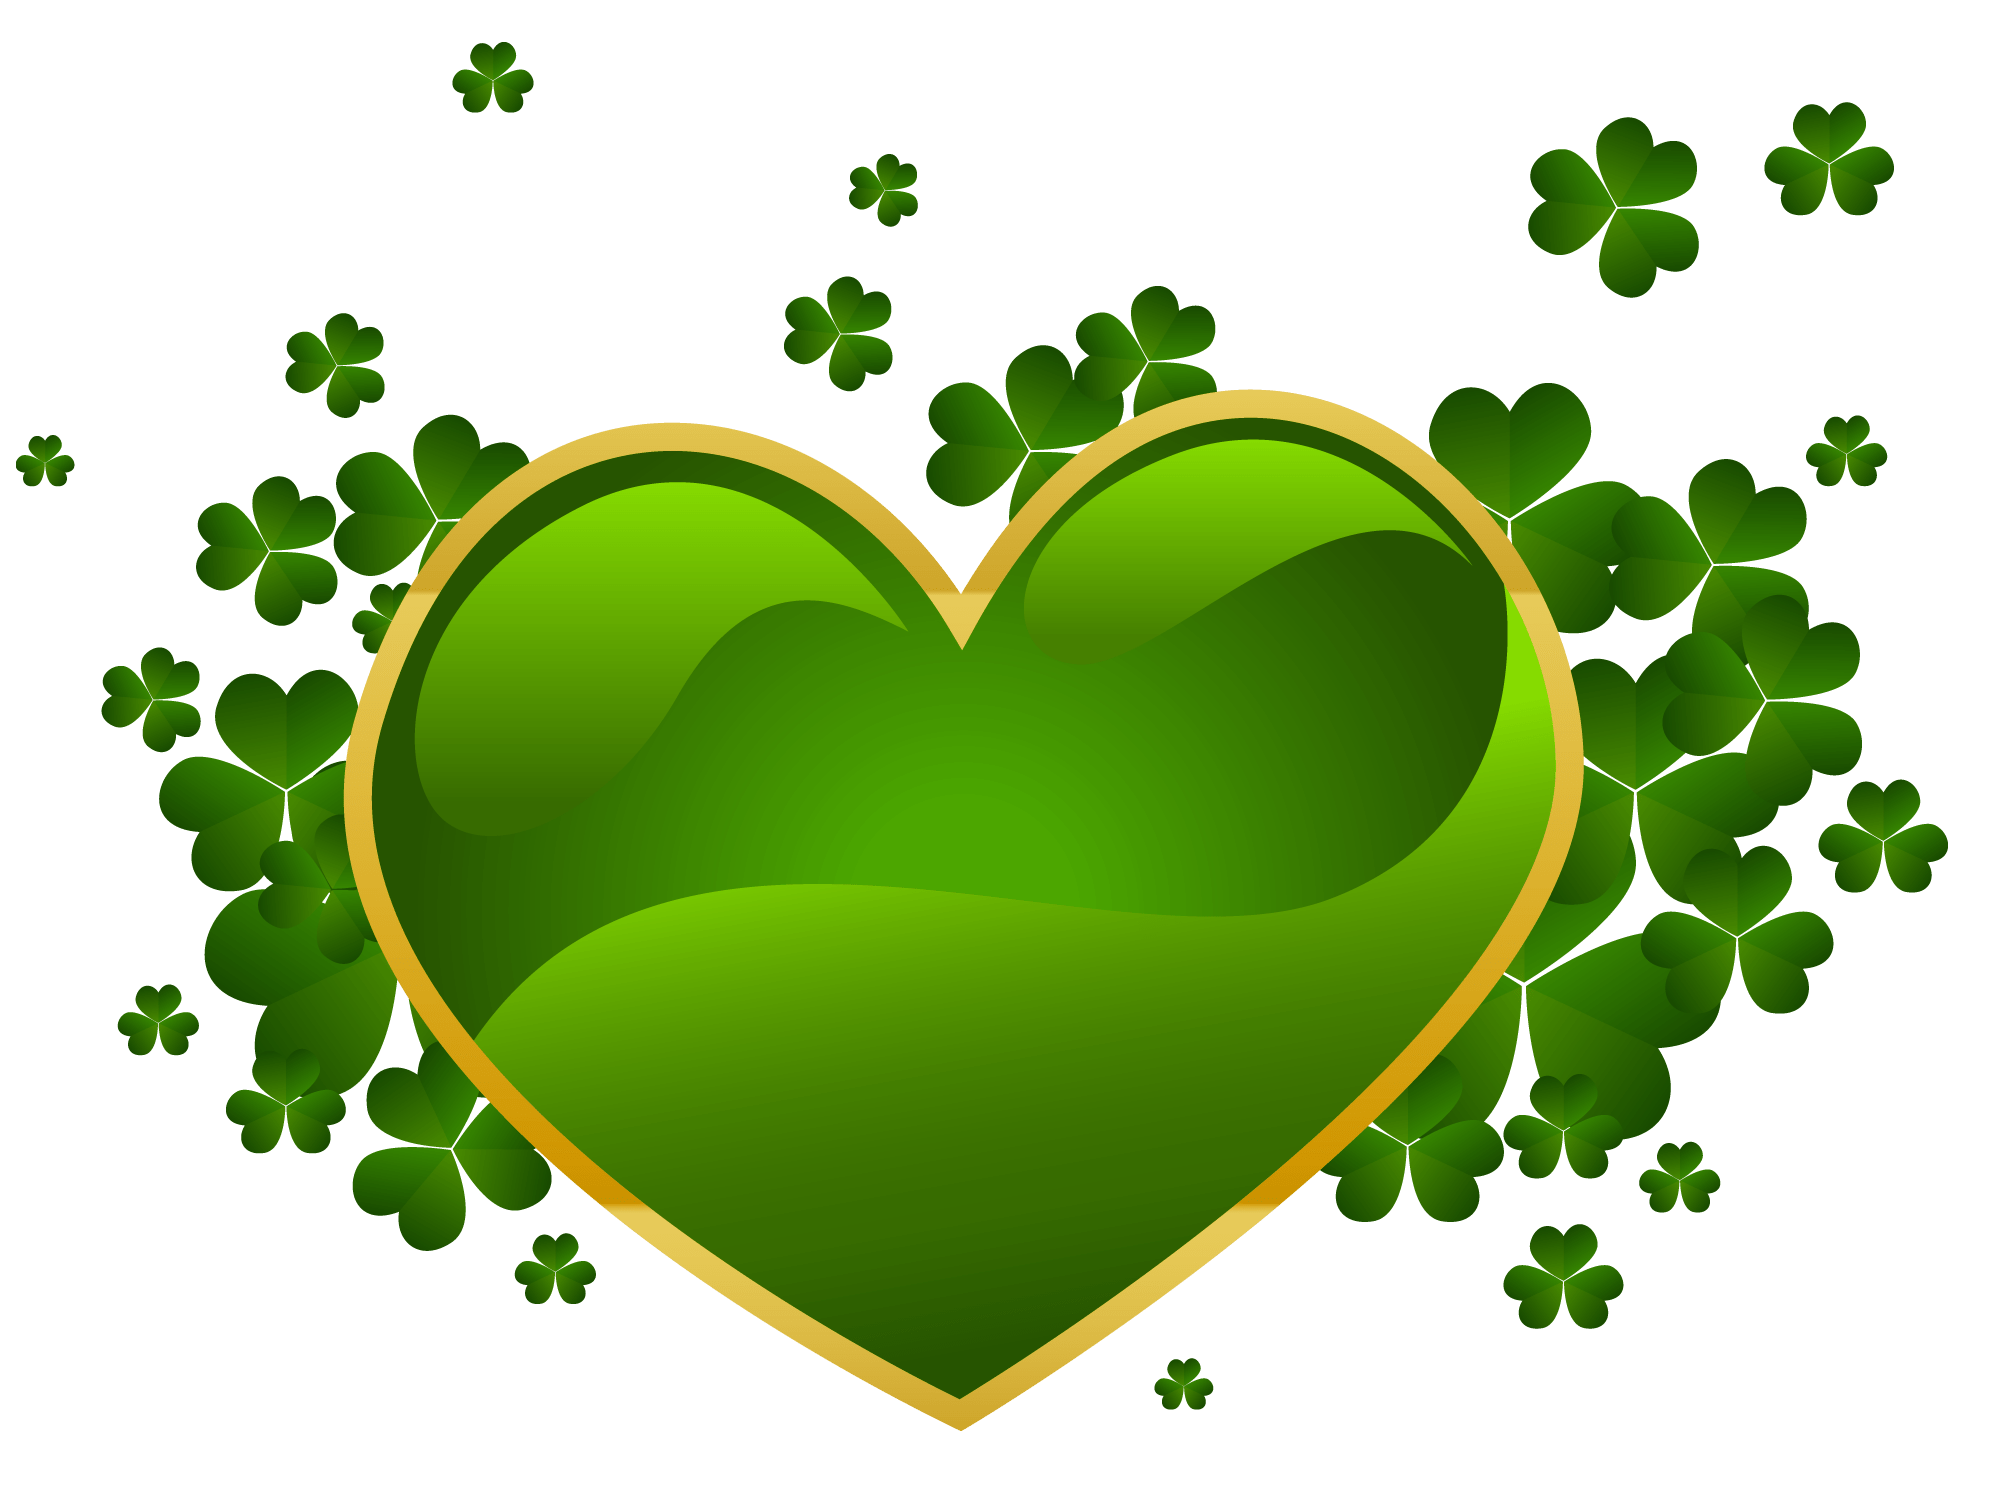 Resultado de imagen para corazon verde